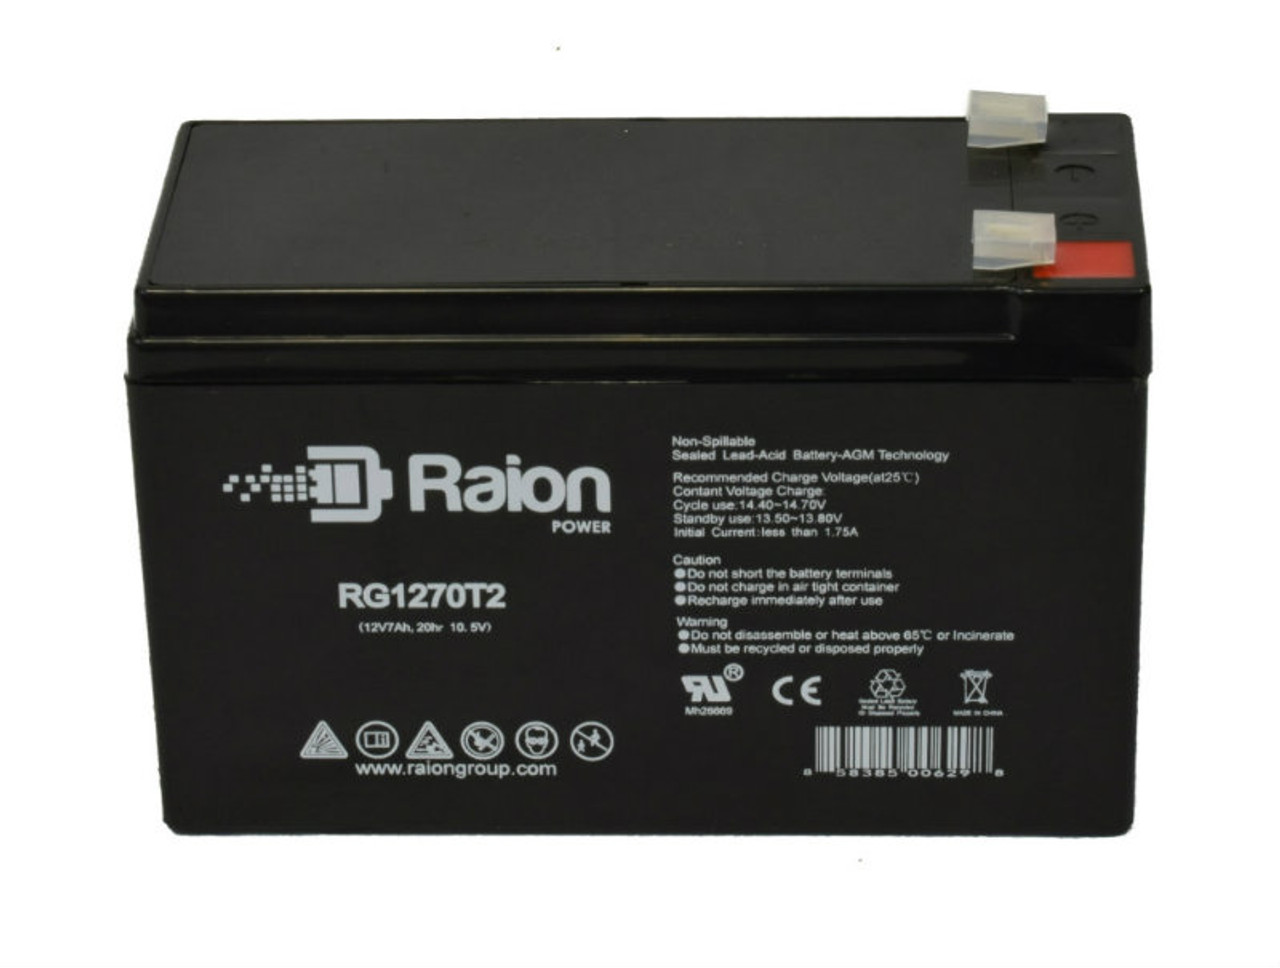 Raion Power RG1270T1 12V 7Ah Lead Acid Battery for Otolift Modul-Air Stairlift